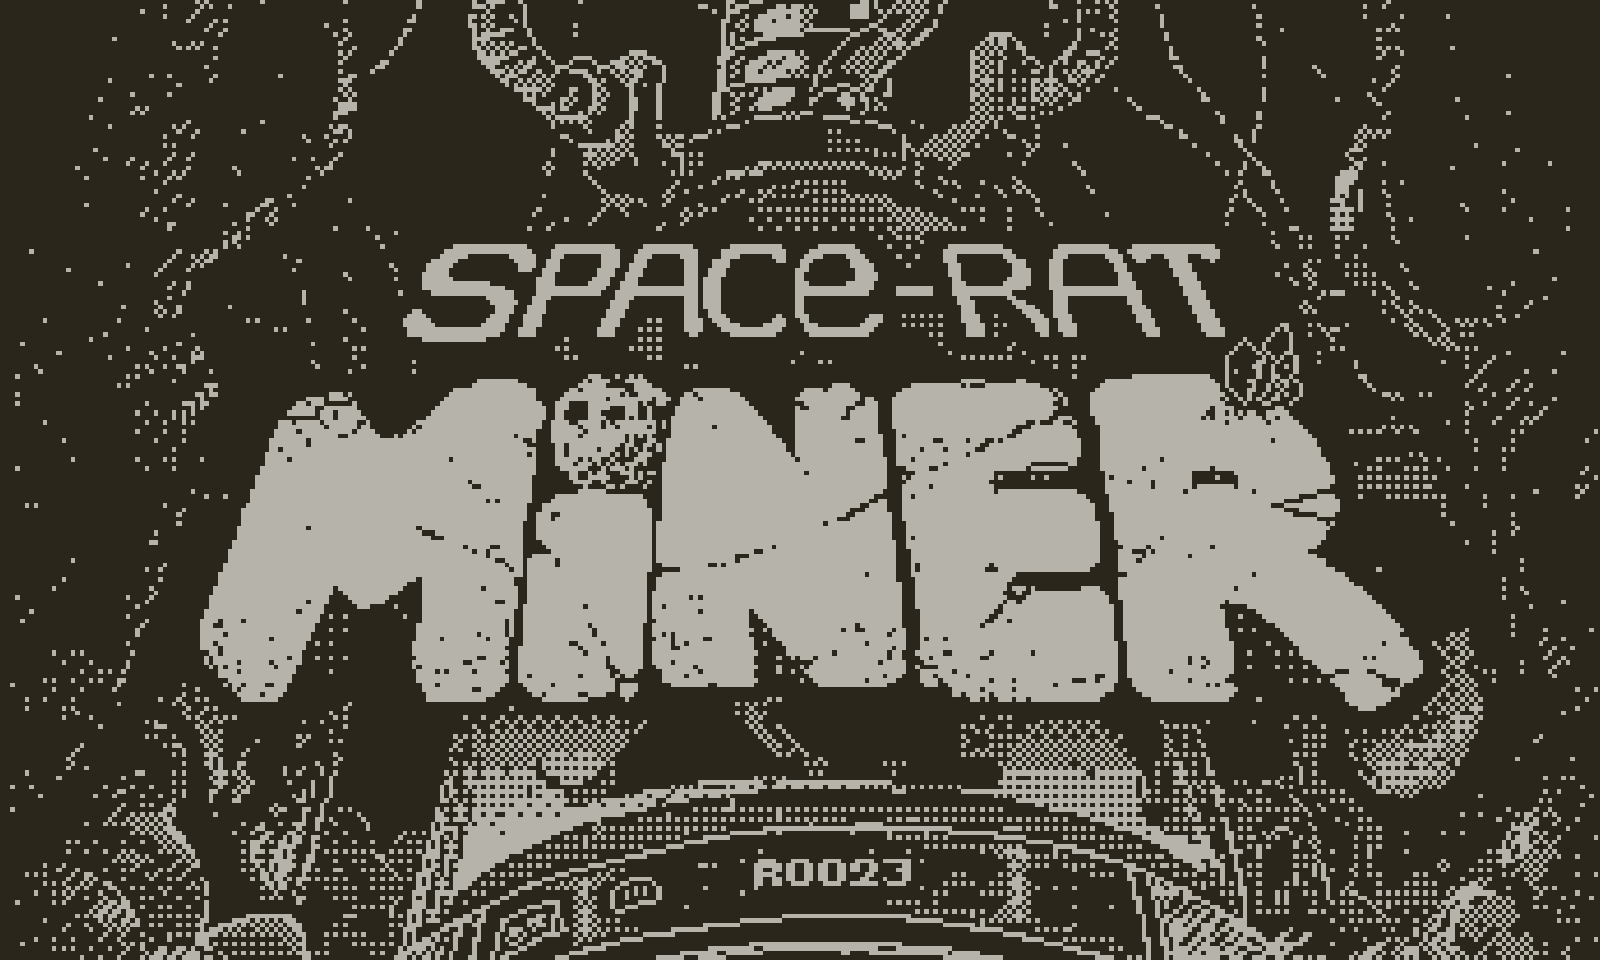 Spacerat Miner